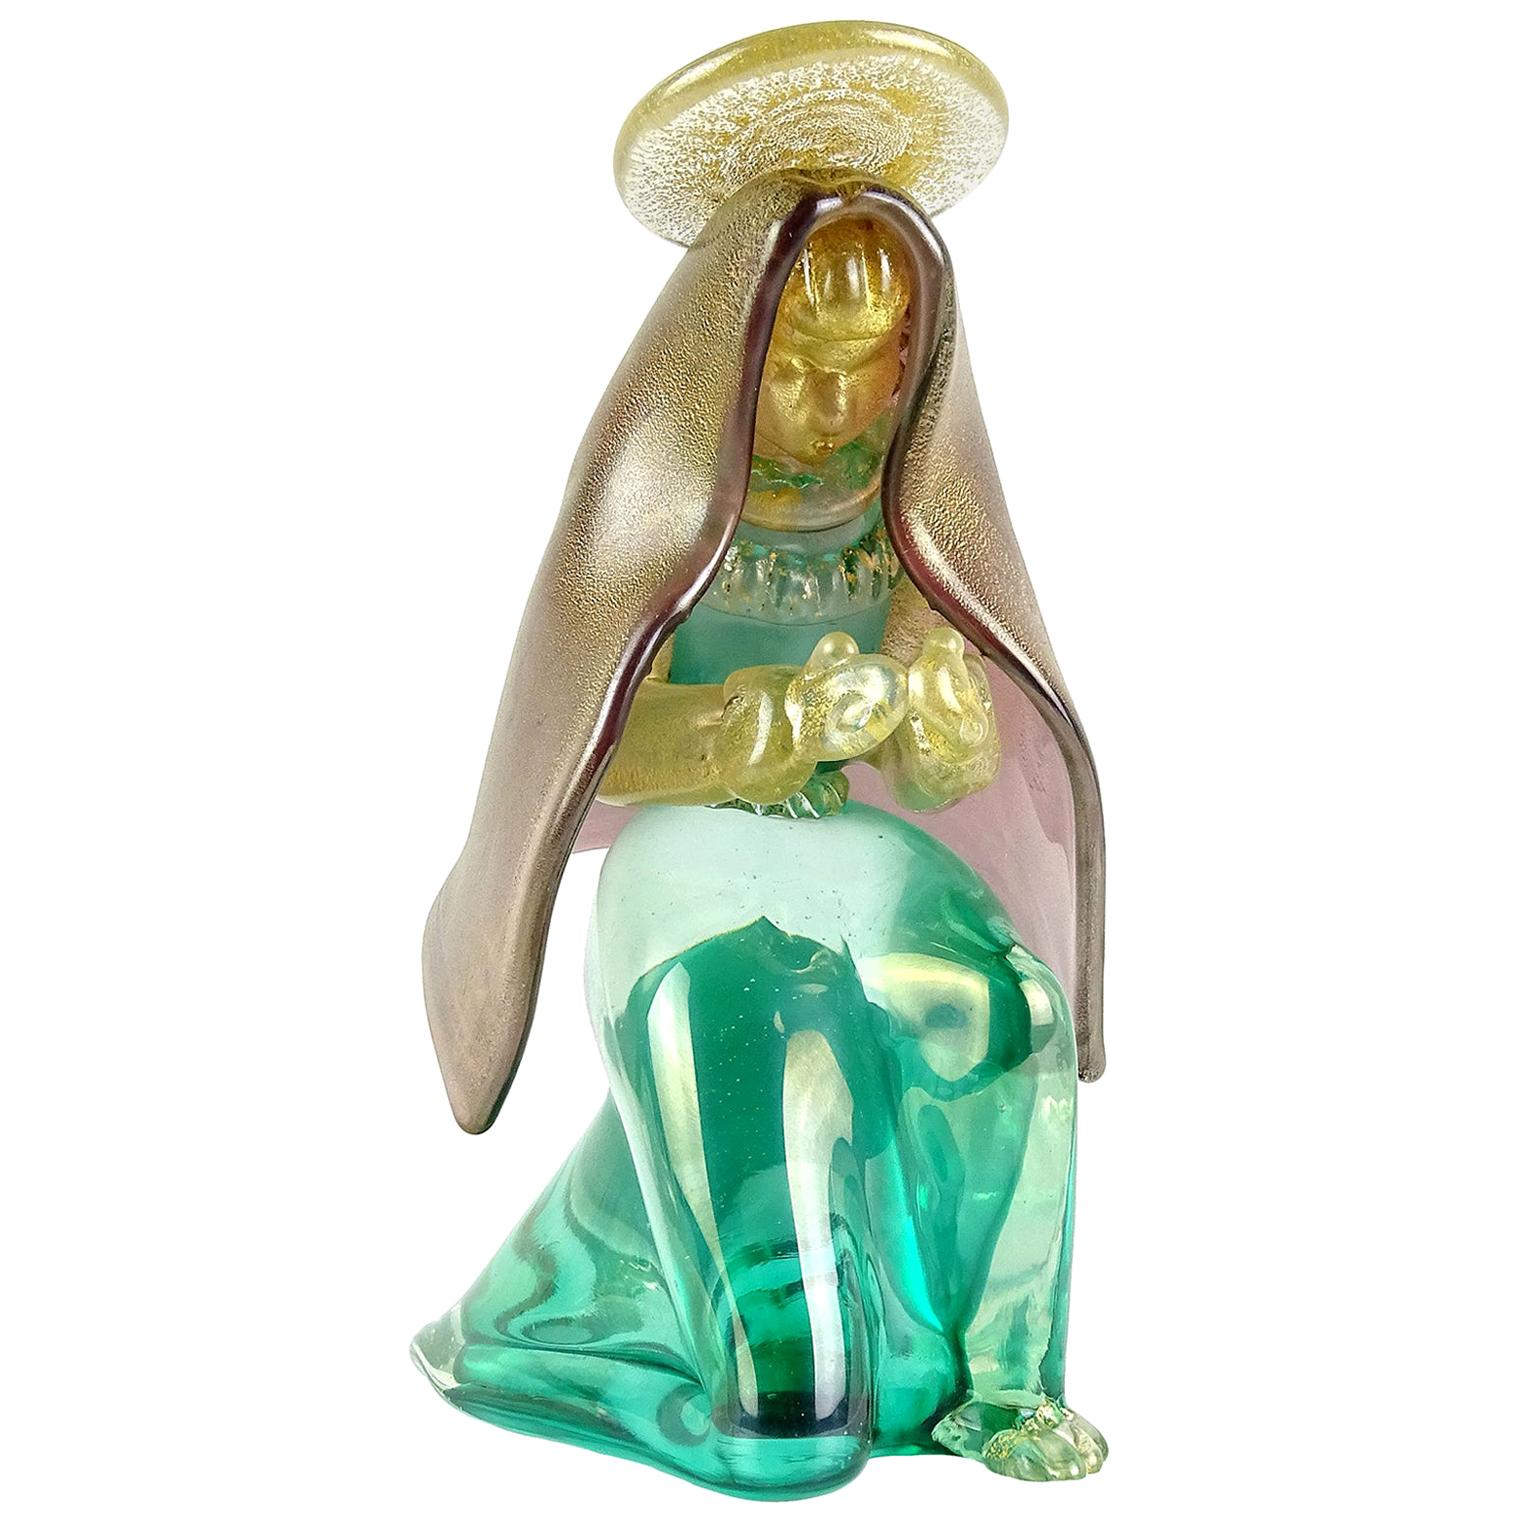 Seguso - Figurine italienne de la nativité de la Vierge Marie en verre d'art de Murano irisé à feuilles d'or